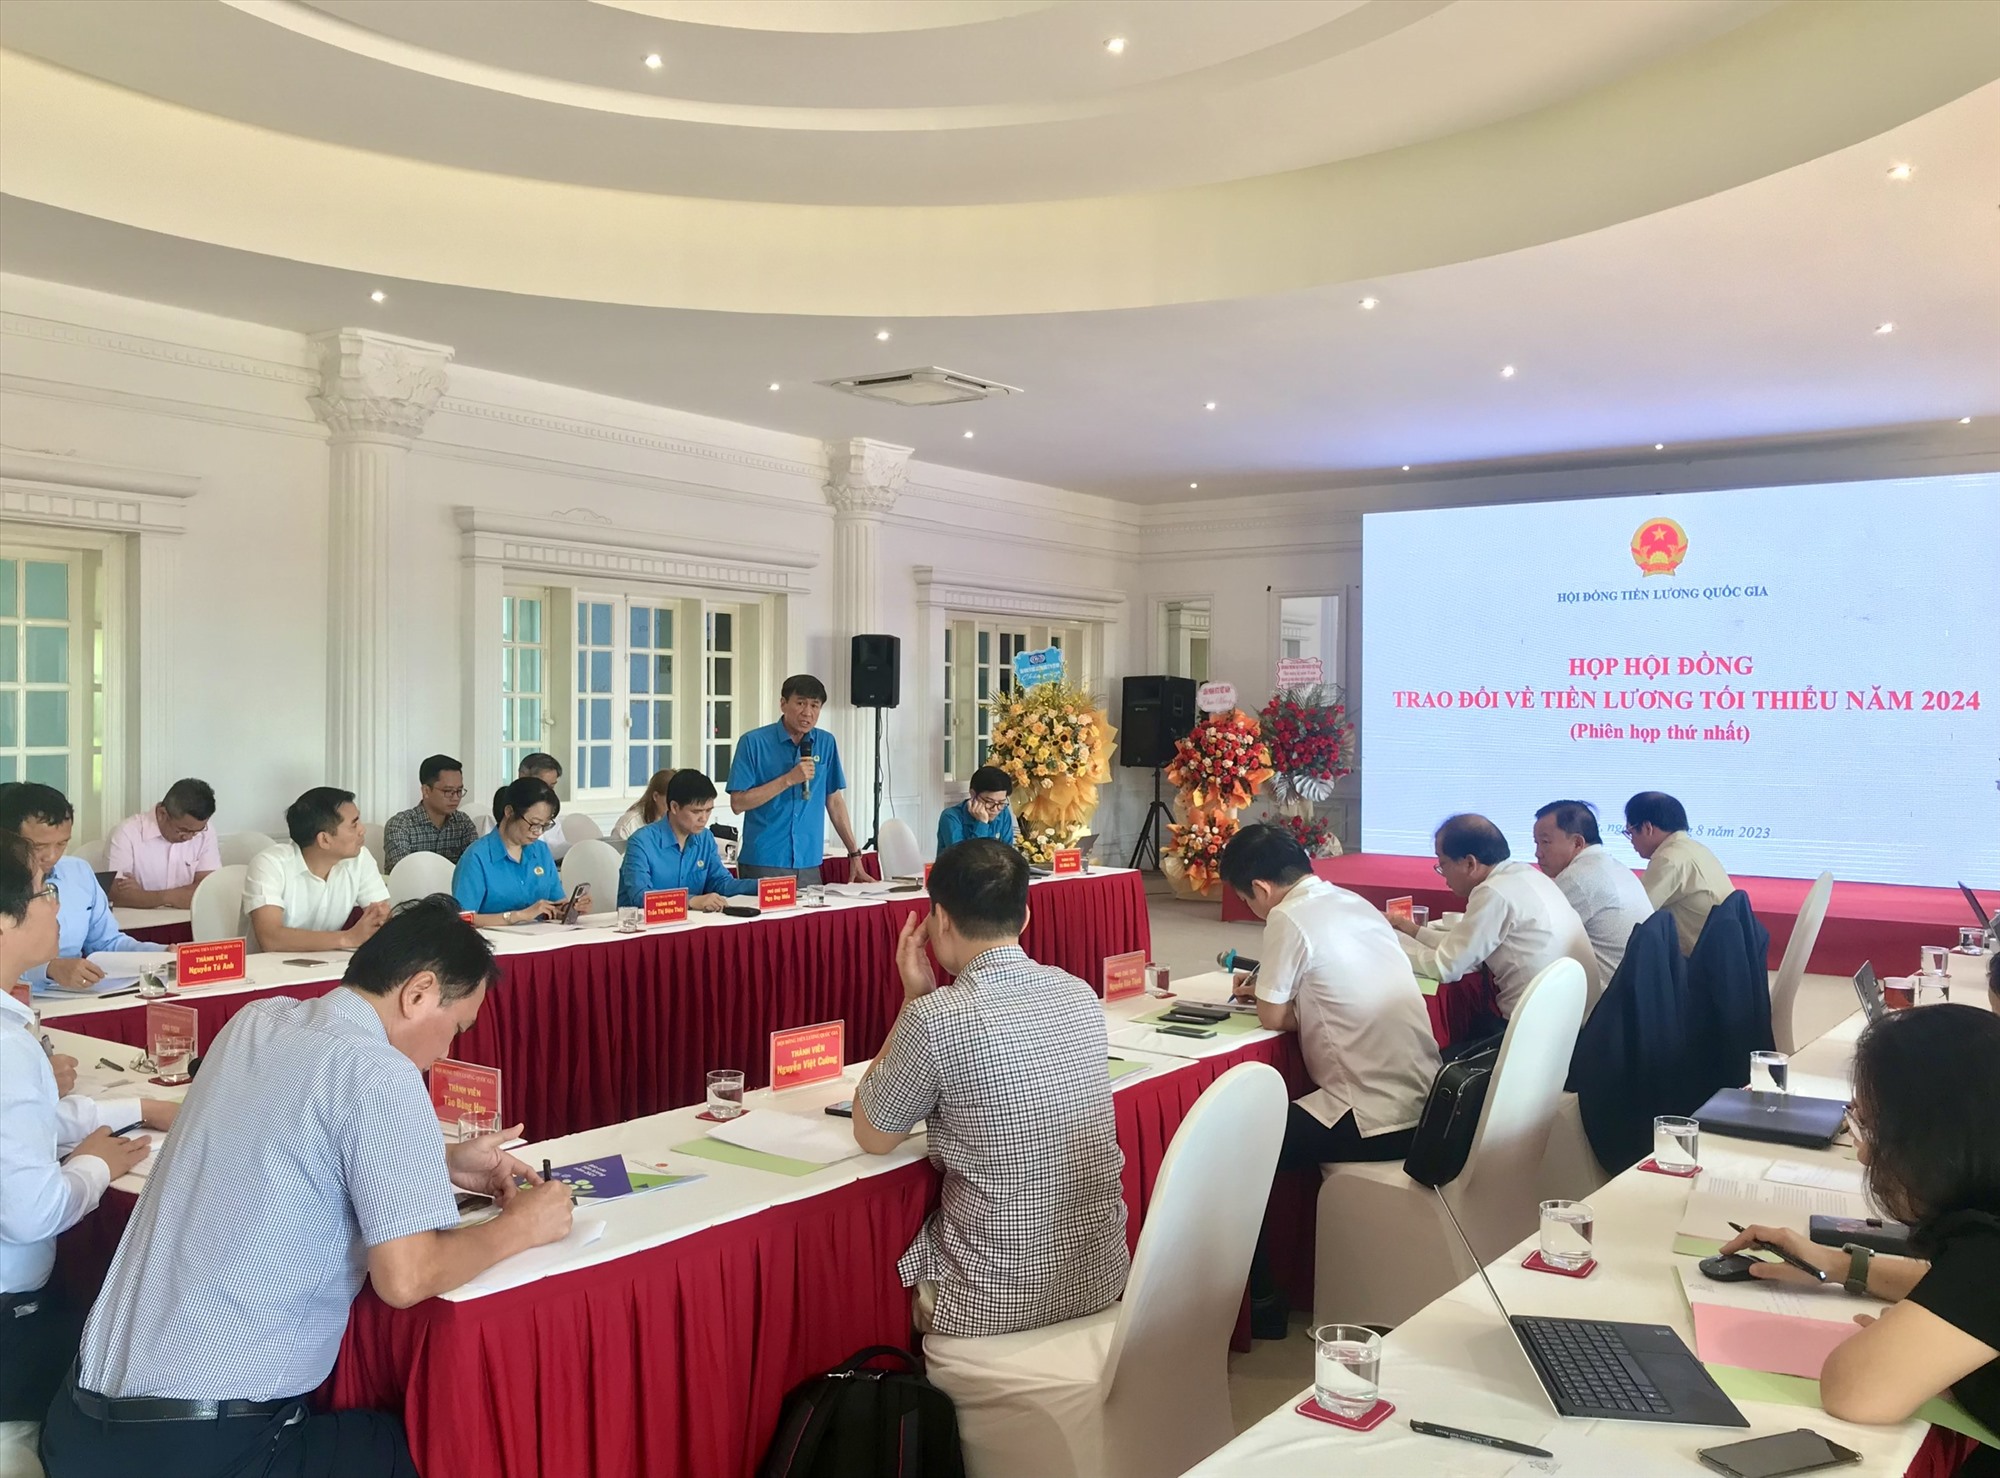 Phiên thứ nhất năm 2023 của Hội đồng tiền lương quốc gia tại Hạ Long, sáng 9.8.2023. Ảnh: Nguyễn Hùng 